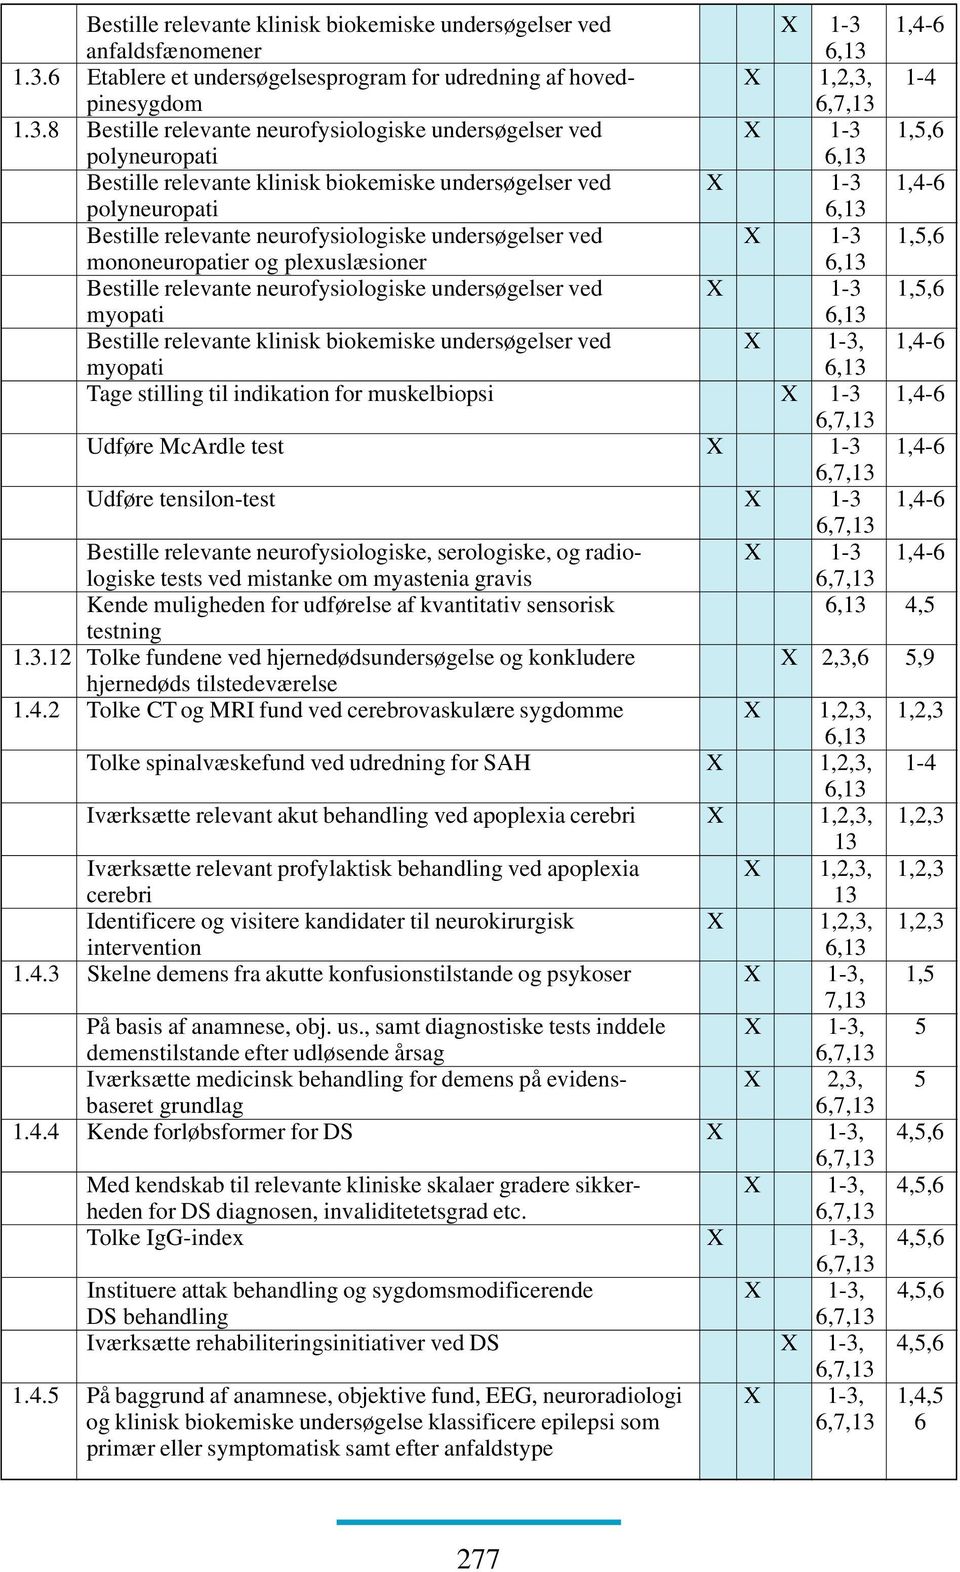 1.3.6 Etablere et undersøgelsesprogram for udredning af hoved- X 1,2,3, 1-4 pinesygdom 1.3.8 Bestille relevante neurofysiologiske undersøgelser ved X 1-3 1,5,6 polyneuropati 6,13 1,4-6 polyneuropati